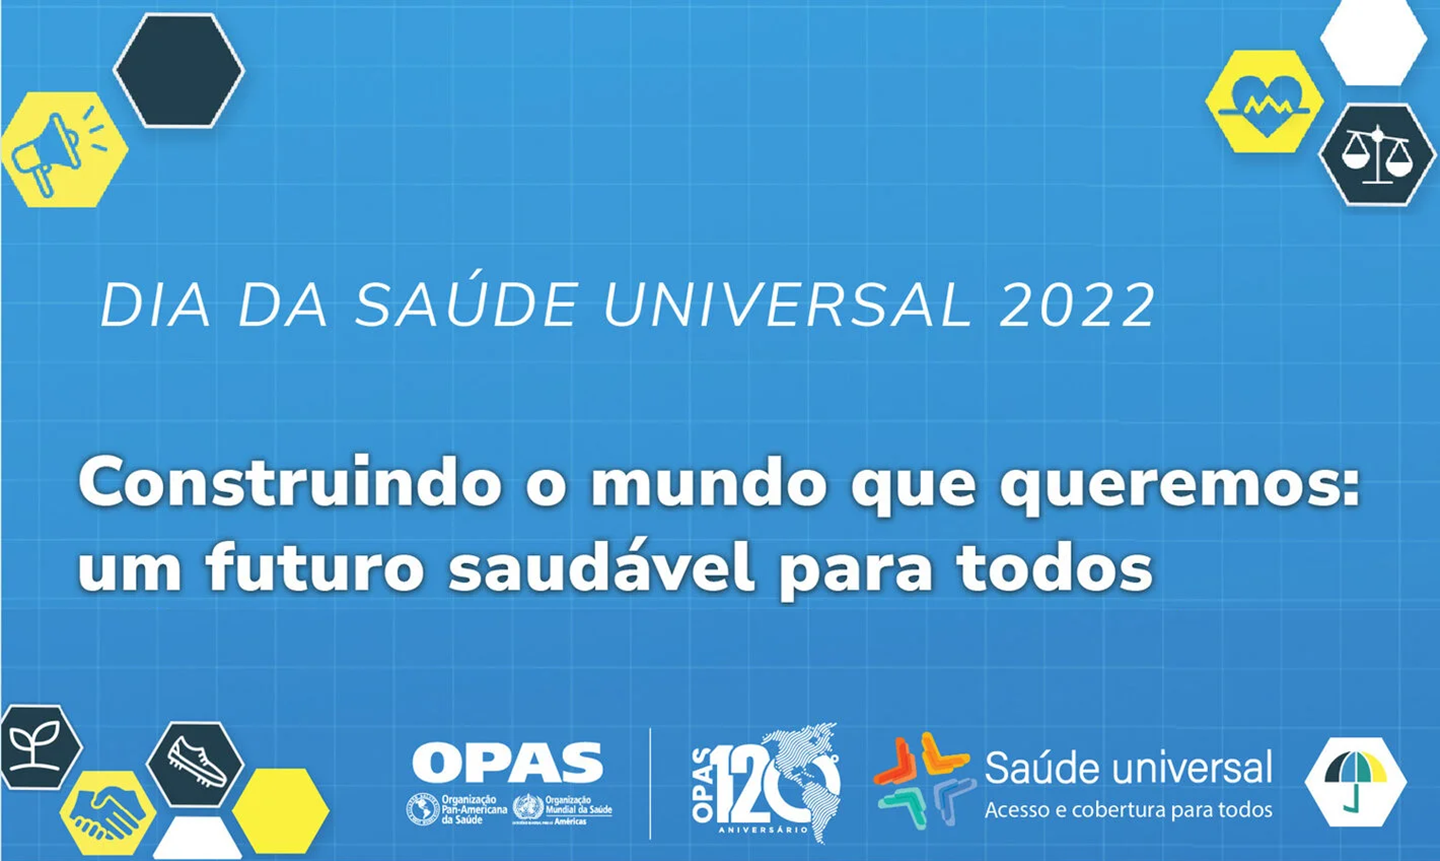 “Construindo o mundo que queremos: um futuro saudável para todos” é o tema do Dia da Saúde Universal de 2022